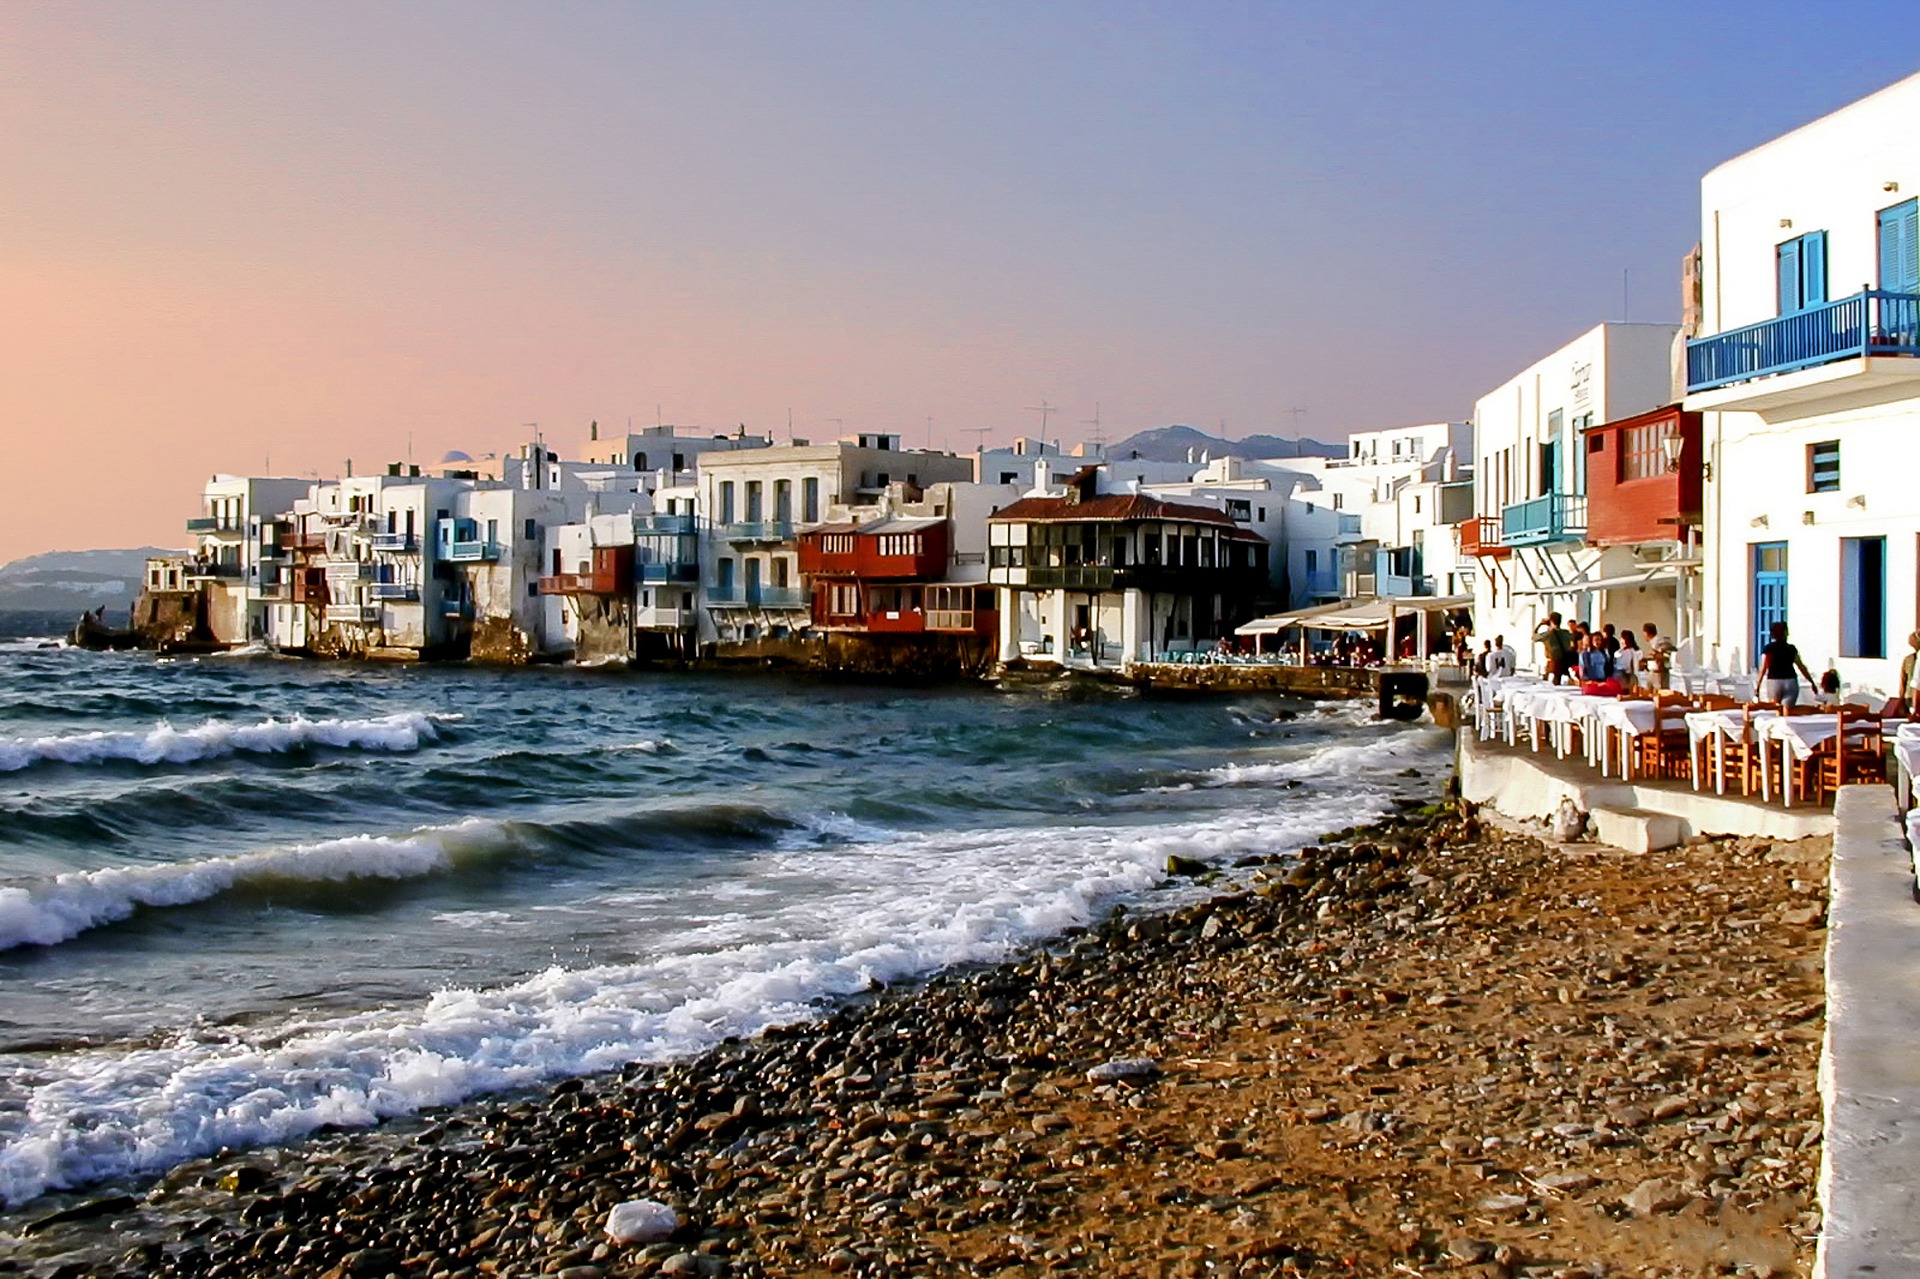 Κρήτη, Σαντορίνη, Νιο: Ποια νησιά βαδίζουν στα χνάρια της Μυκόνου